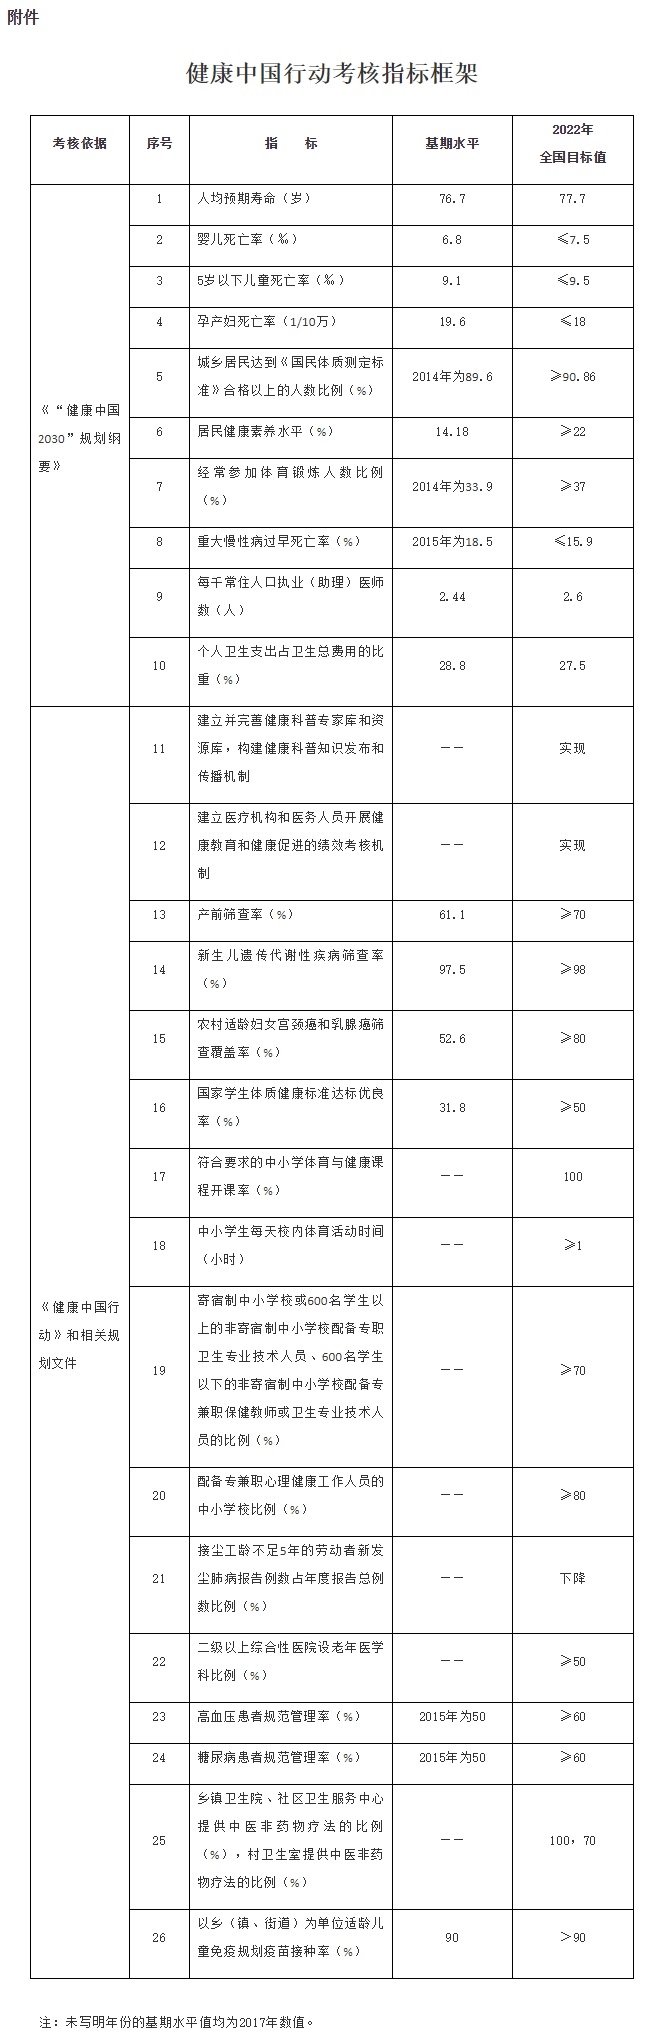 附件：健康中國行動考核指標框架.jpg